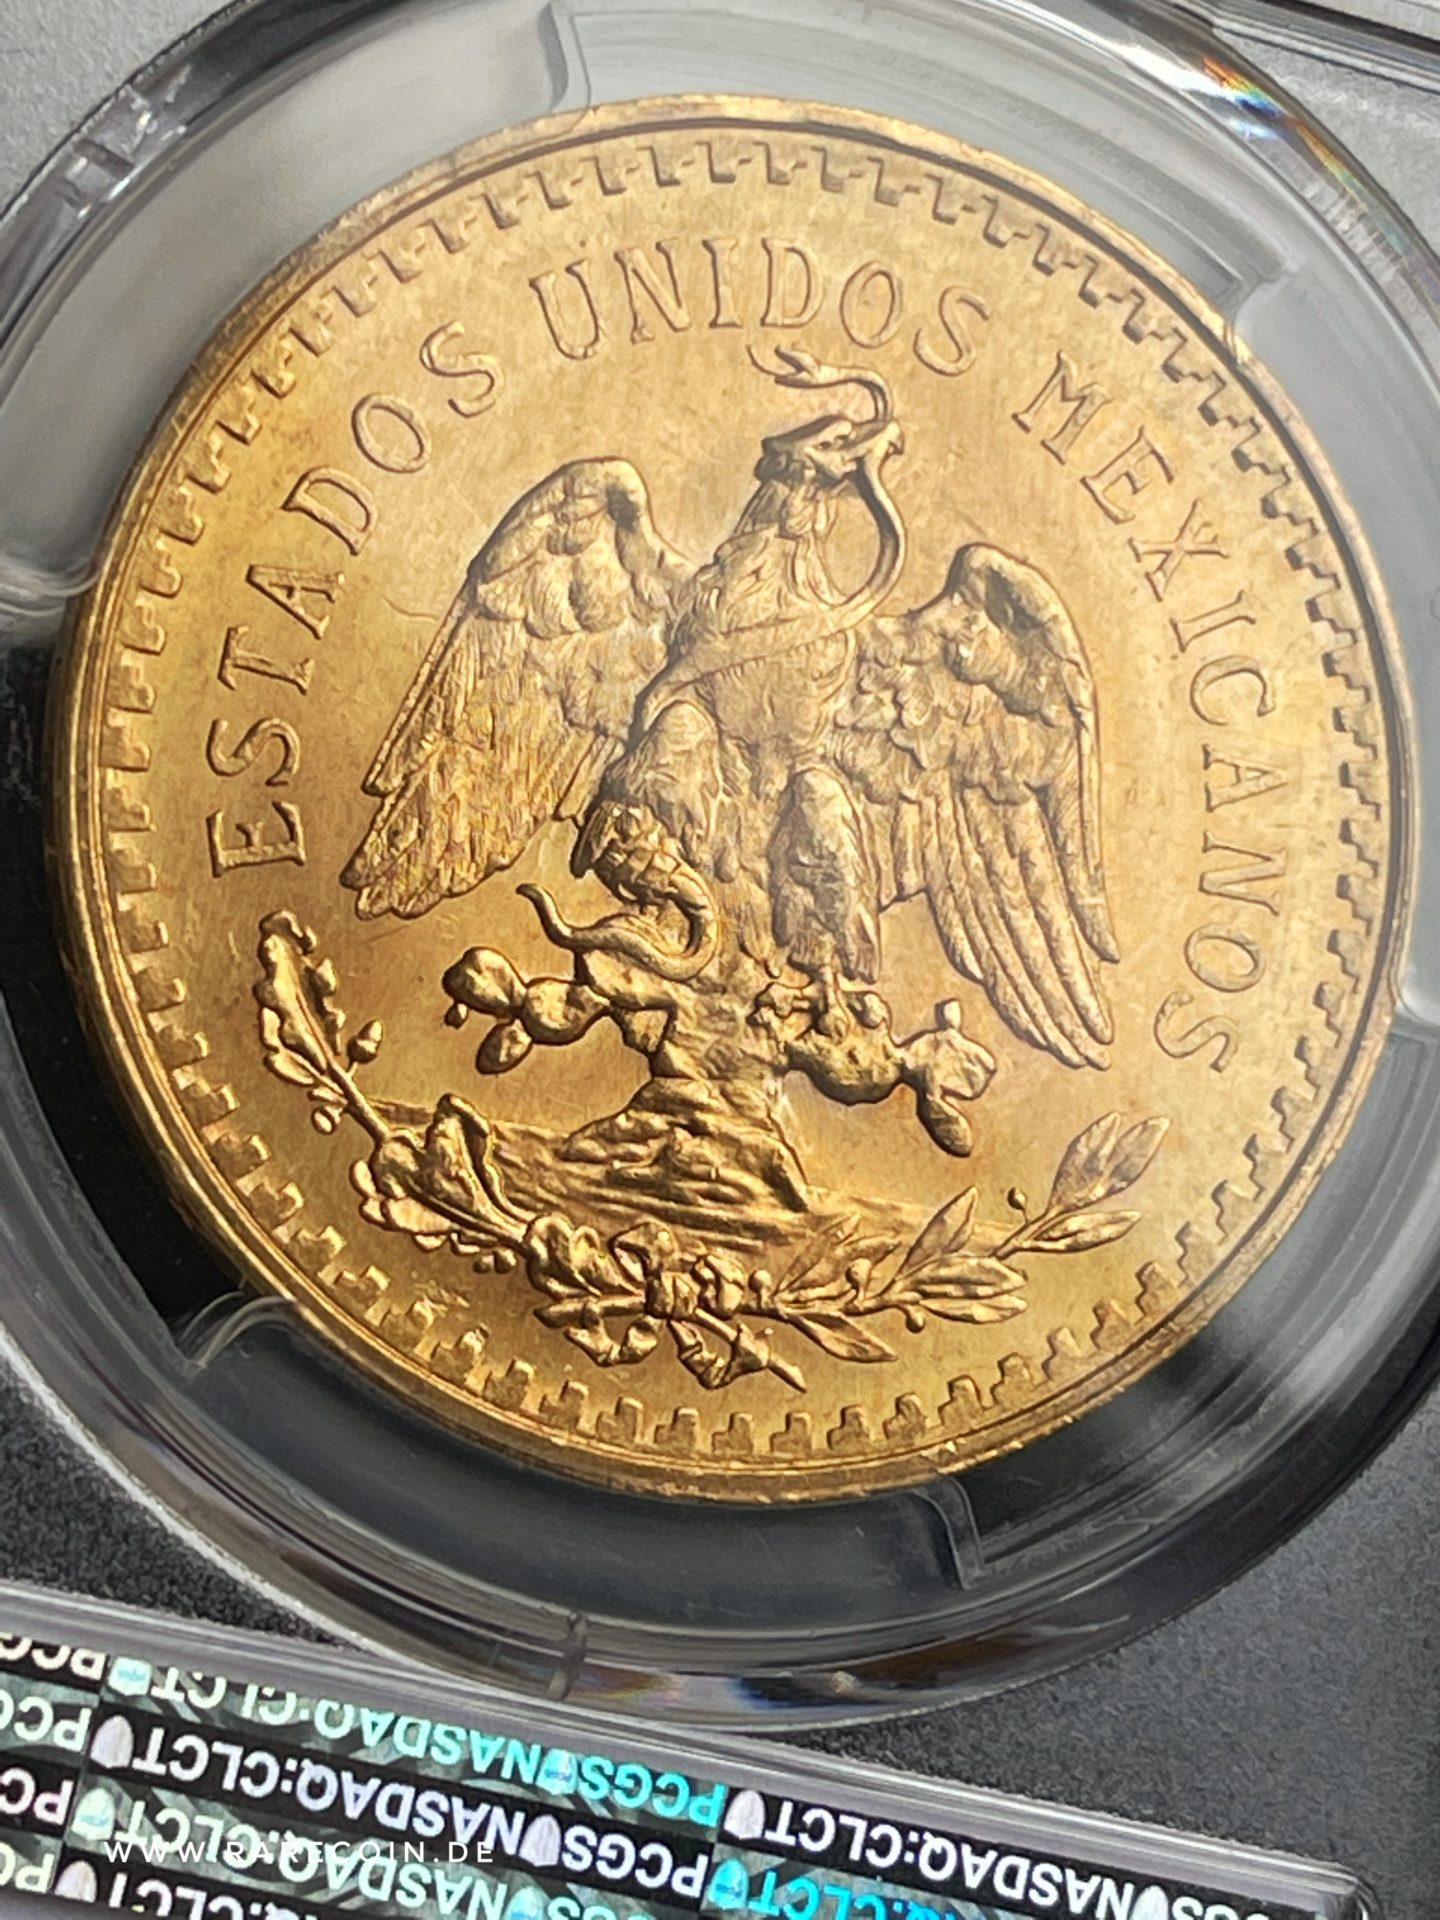 50 Pesos 1945 Centenario Gold